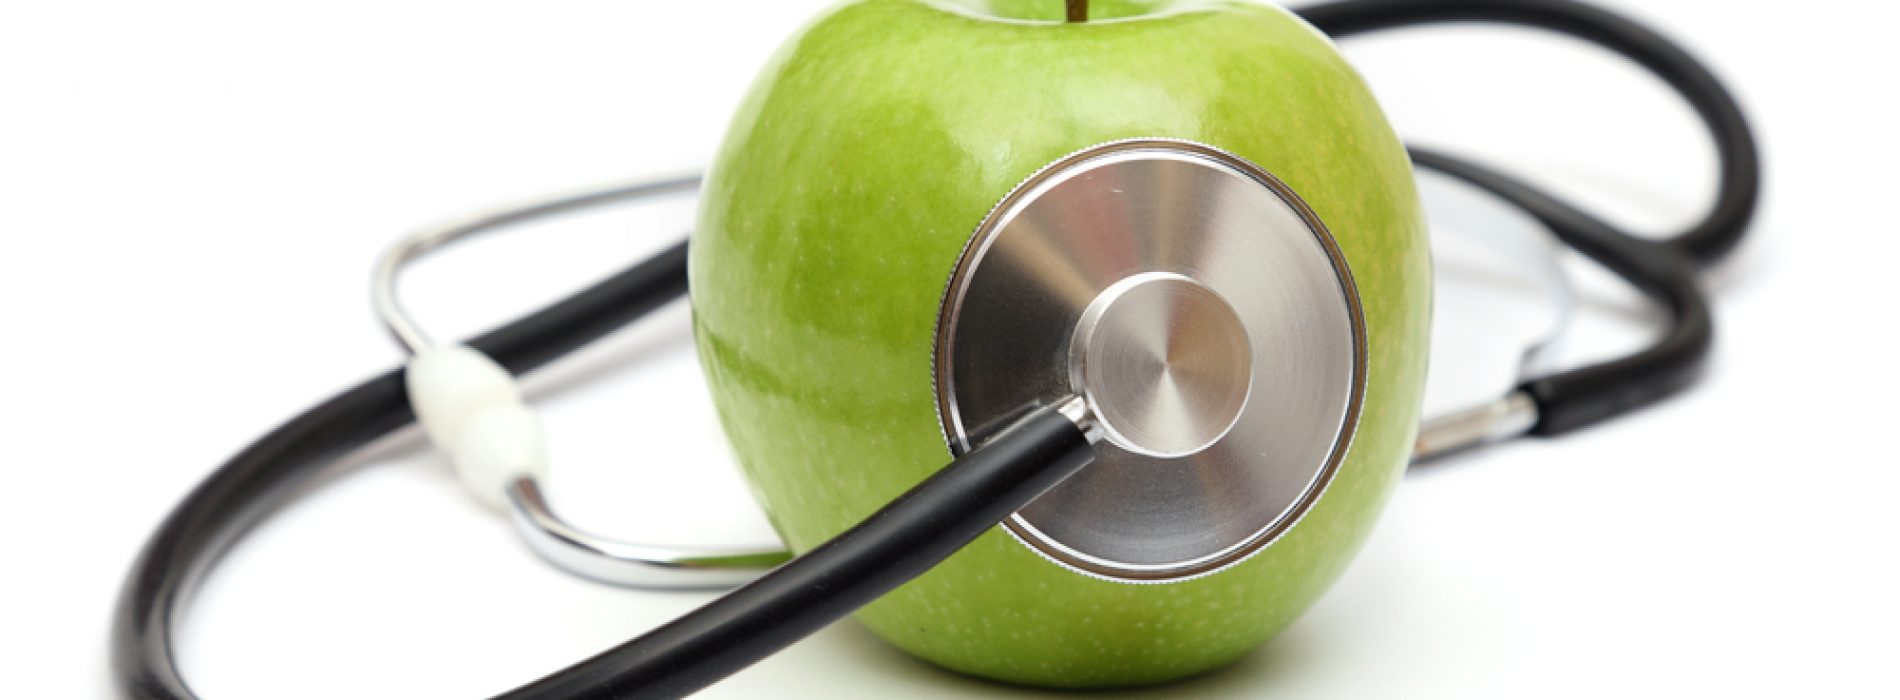 Het eten van appels en ander voedsel dat rijk is aan flavonoïden verlaagt het risico op kanker en hartaandoeningen, constateren onderzoekers